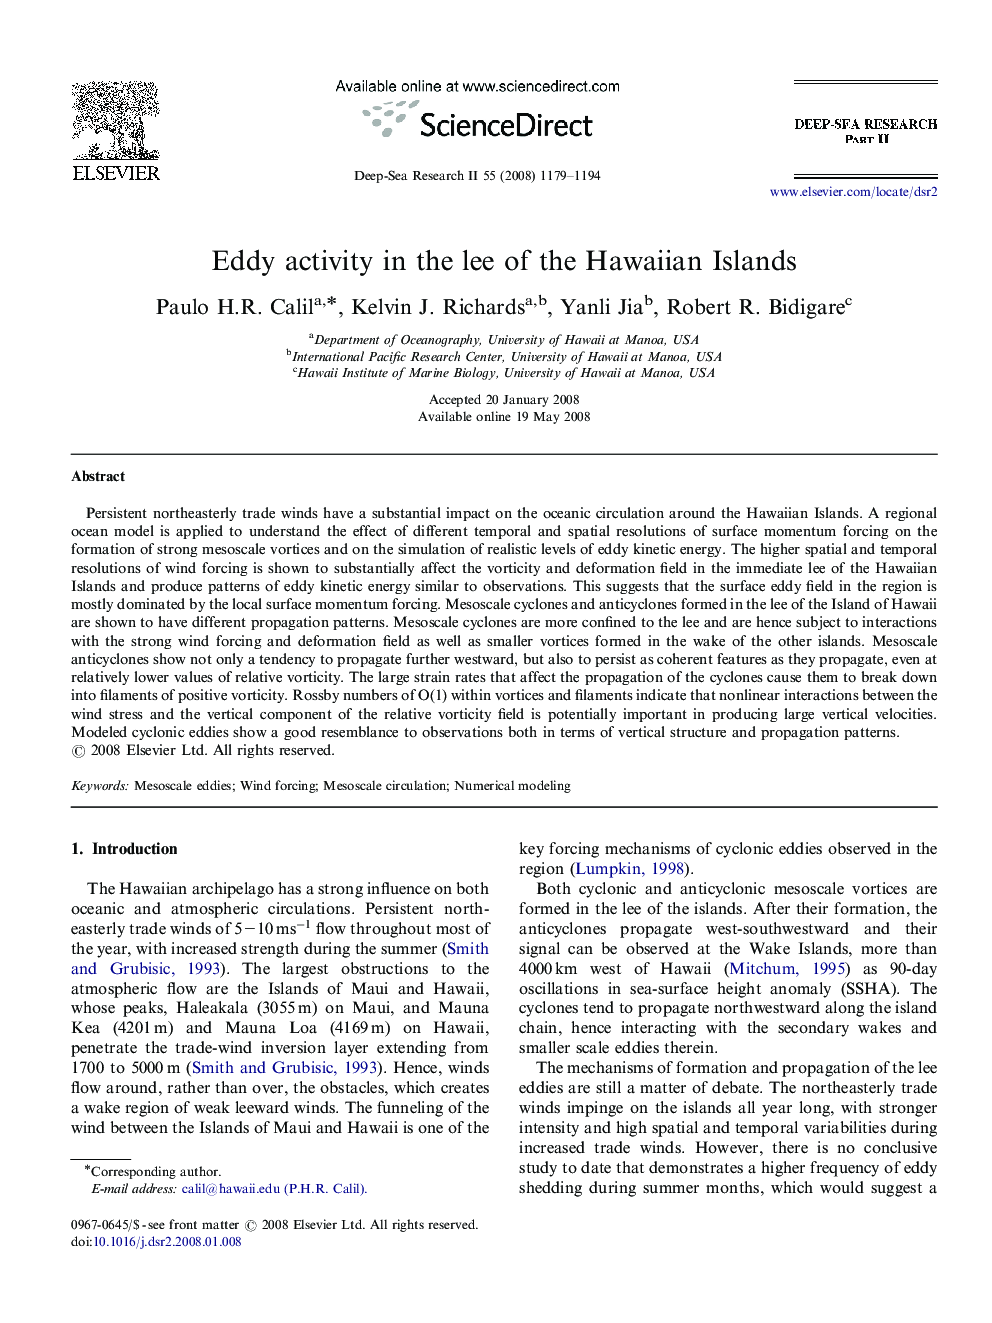 Eddy activity in the lee of the Hawaiian Islands